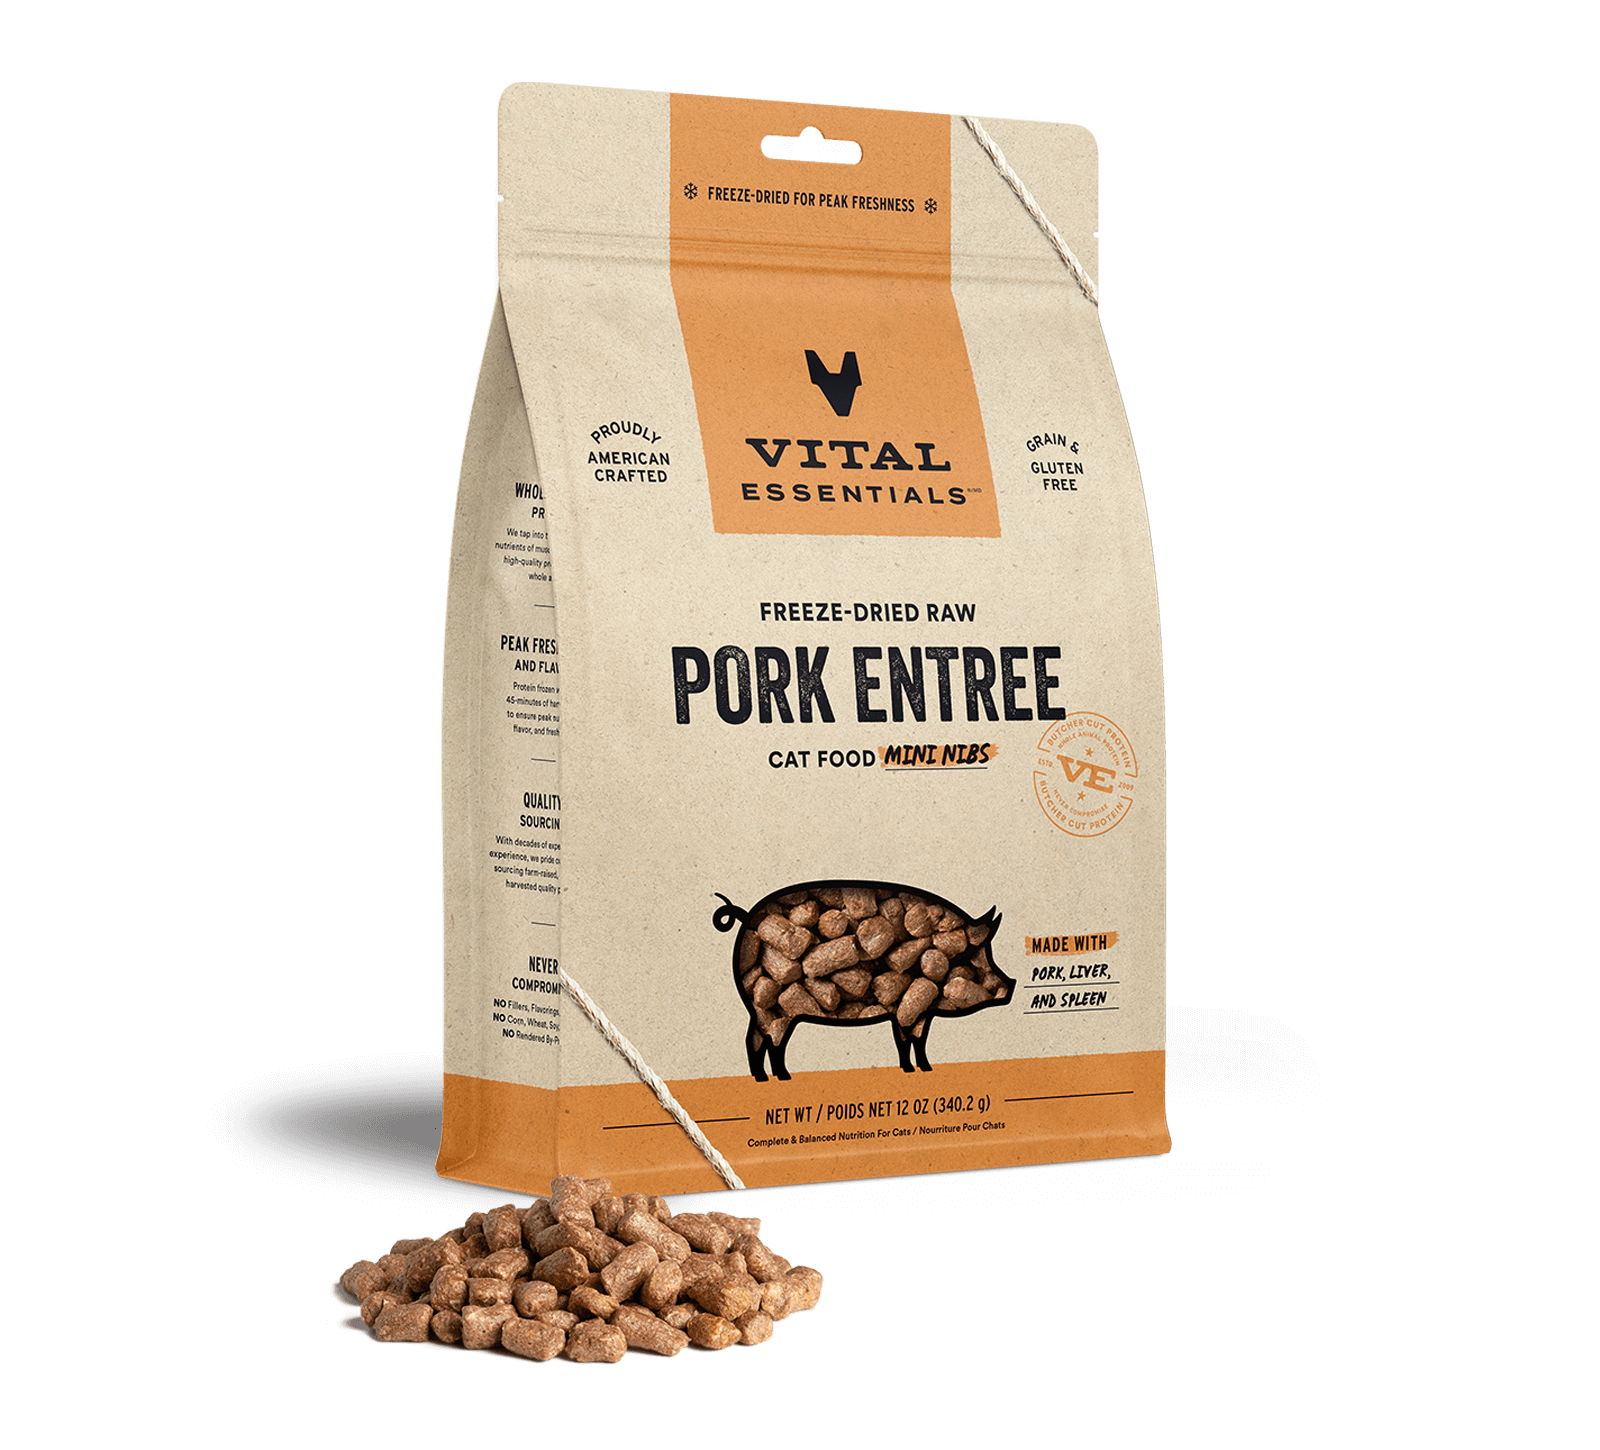 Vital Essentials Freeze-Dried Raw Pork Entree Cat Food Mini Nibs, 12 oz - Healing/First Aid